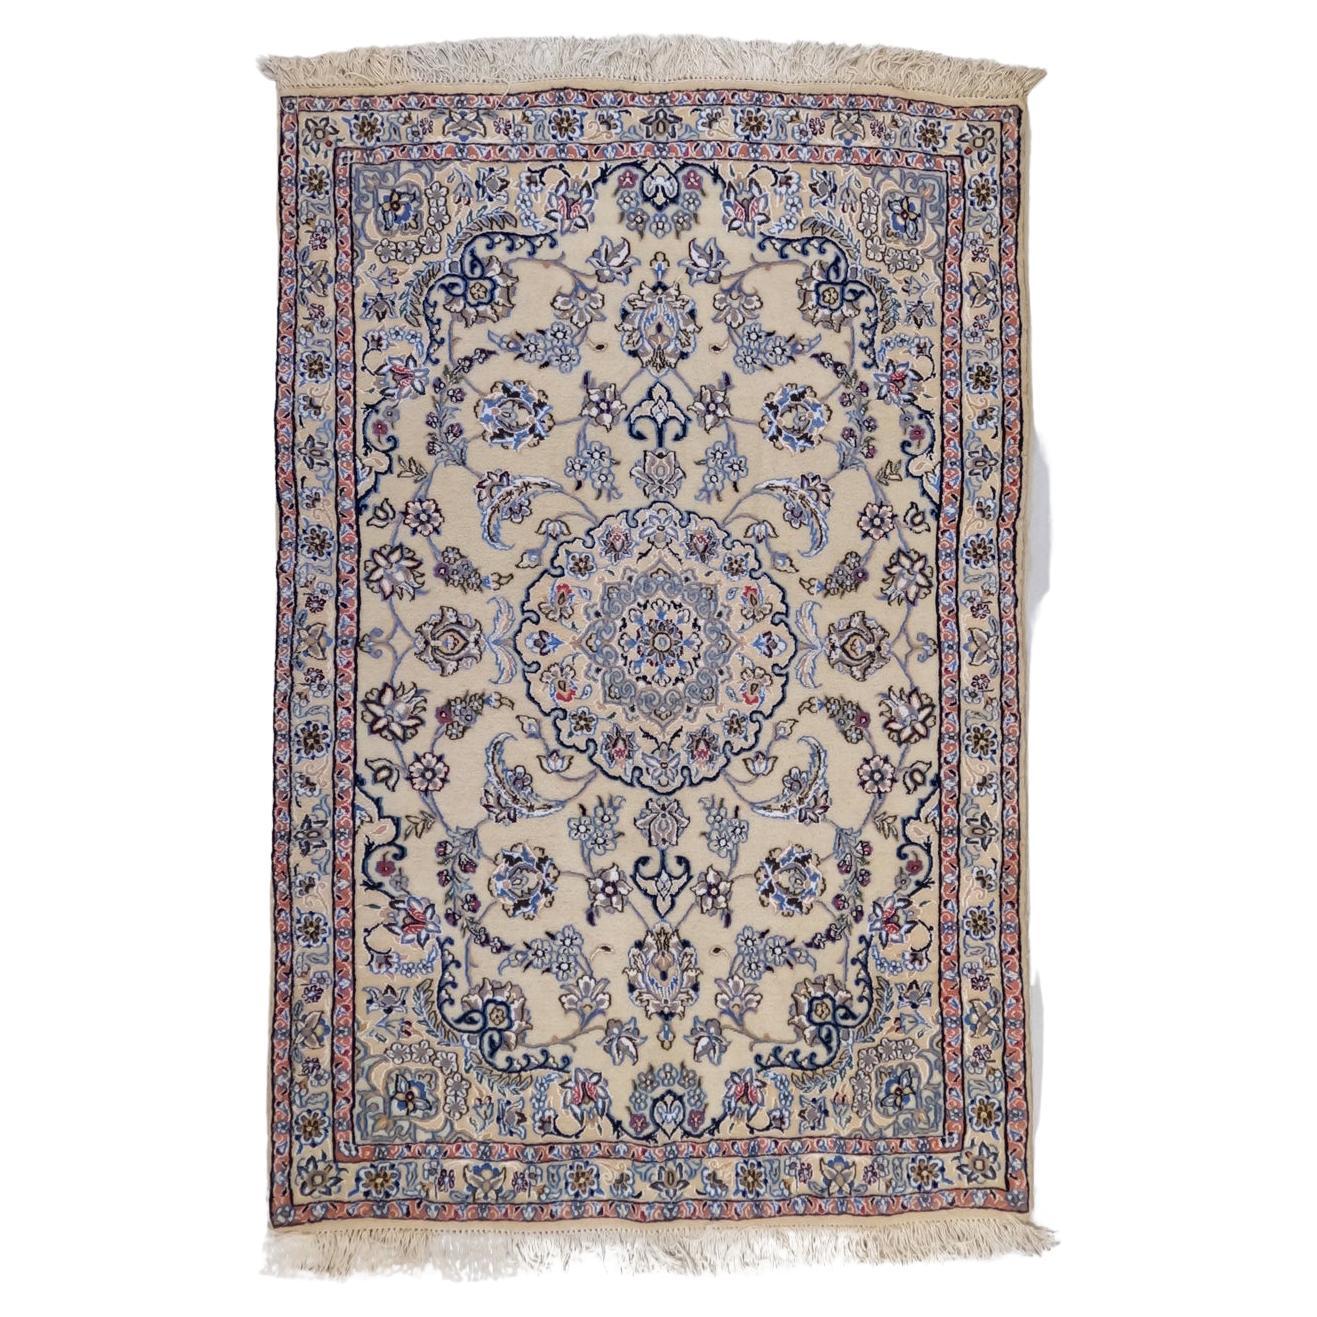 Lady's Carpet: Vintage Petite Esfahan